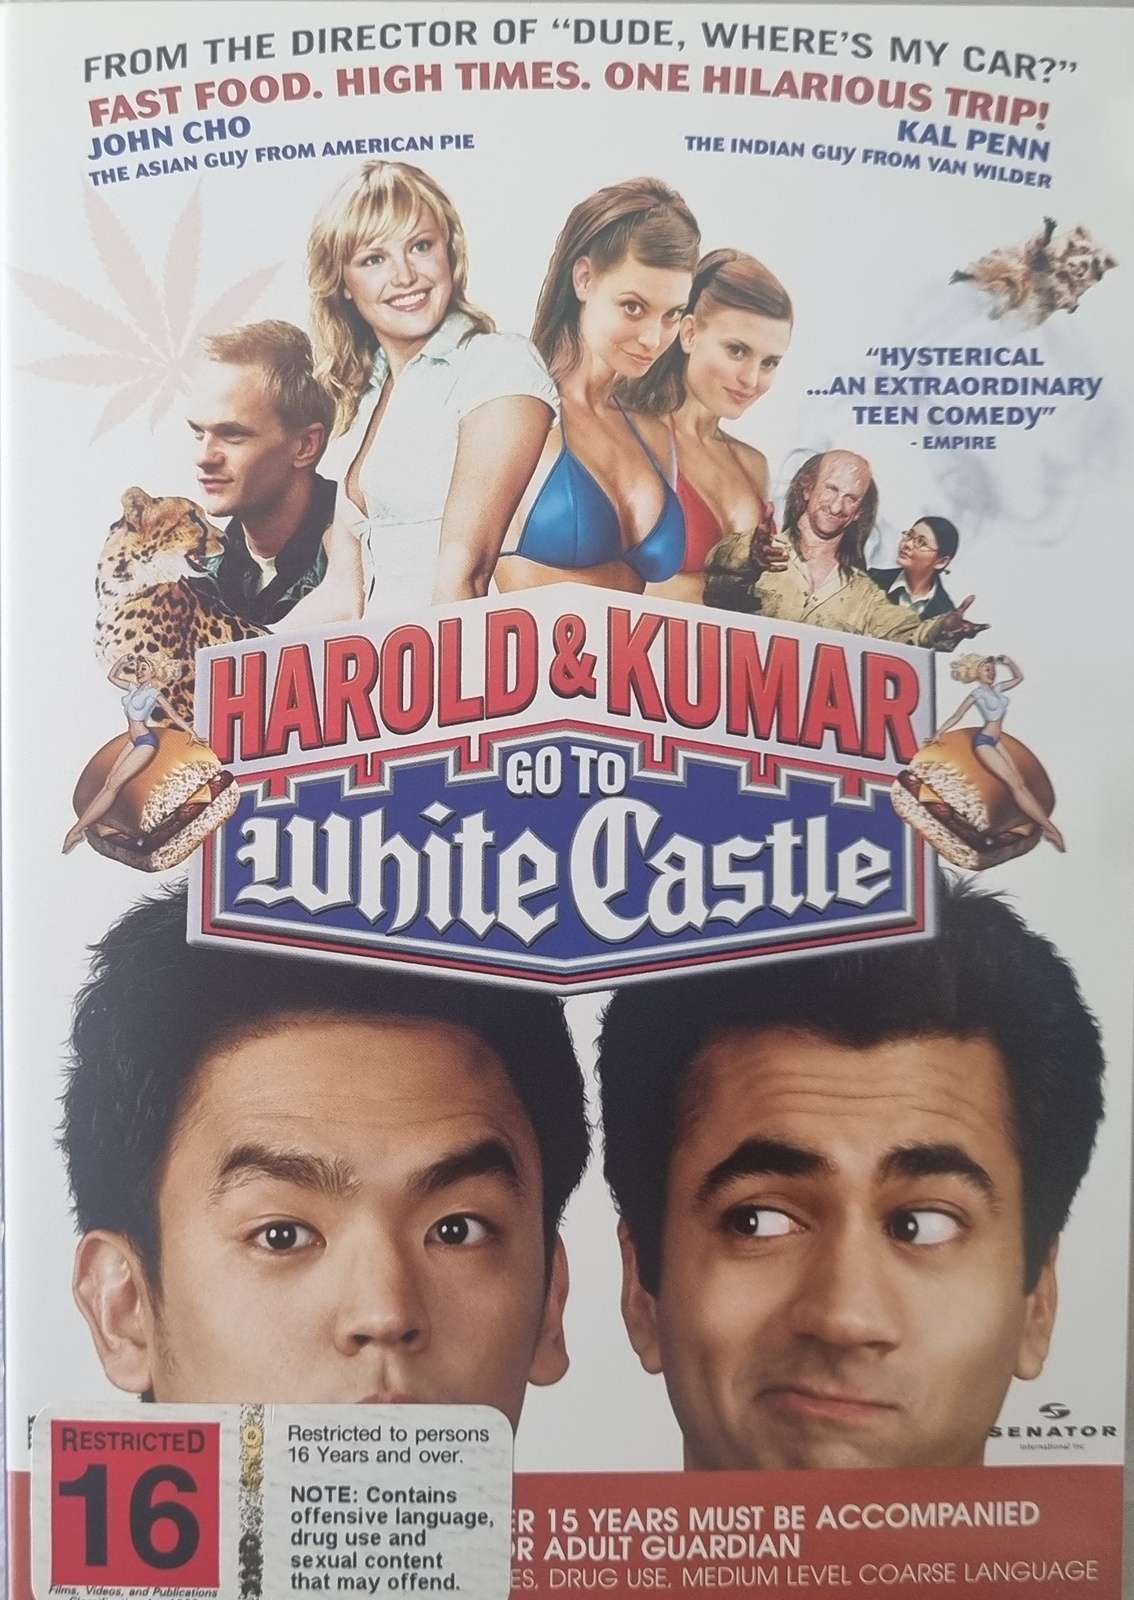 Harold & Kumar Go To White Castle (DVD)